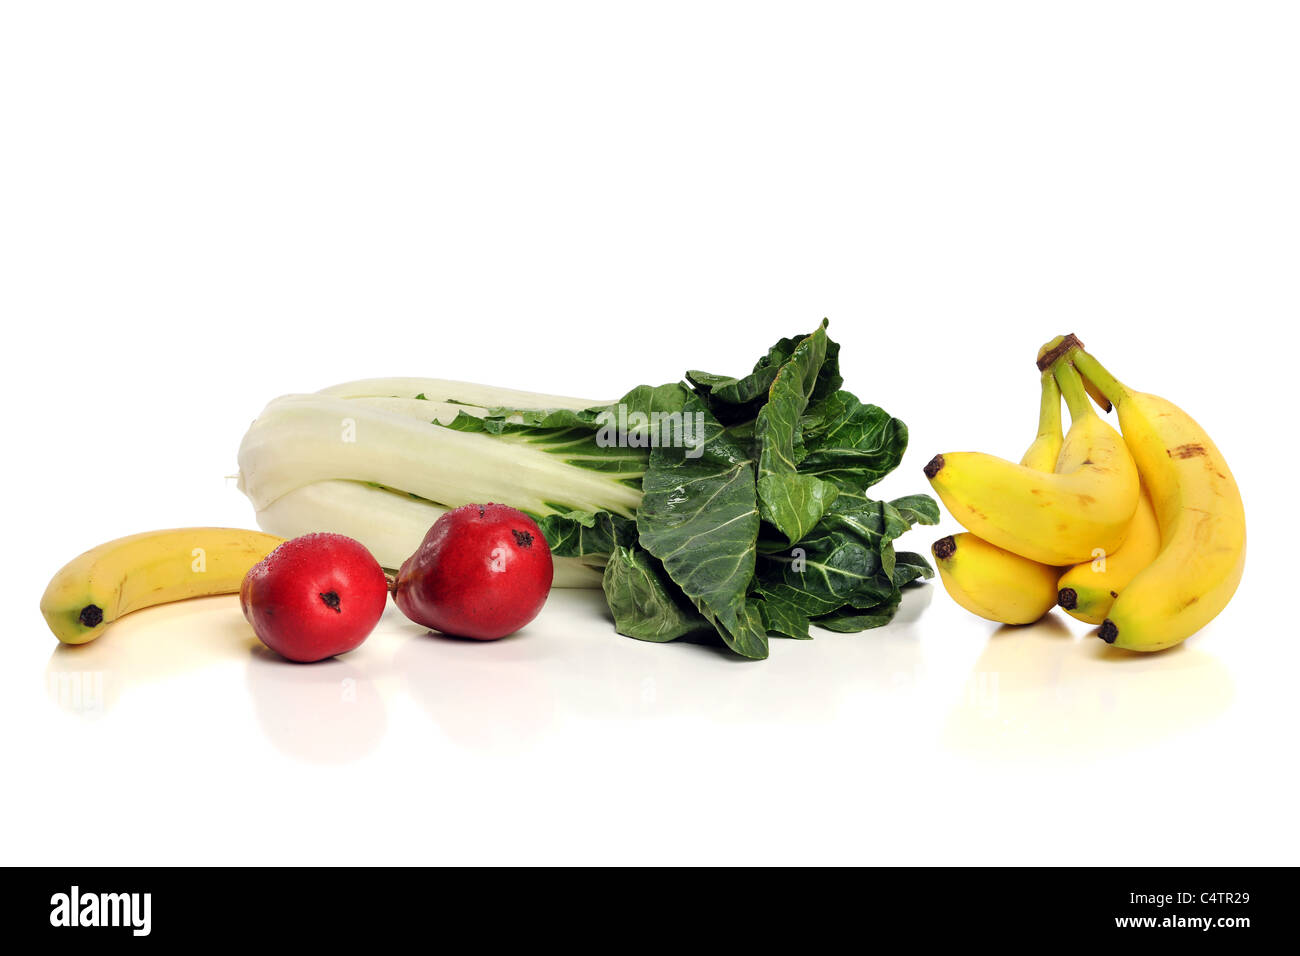 Fruits et légumes sur fond blanc avec des réflexions Banque D'Images